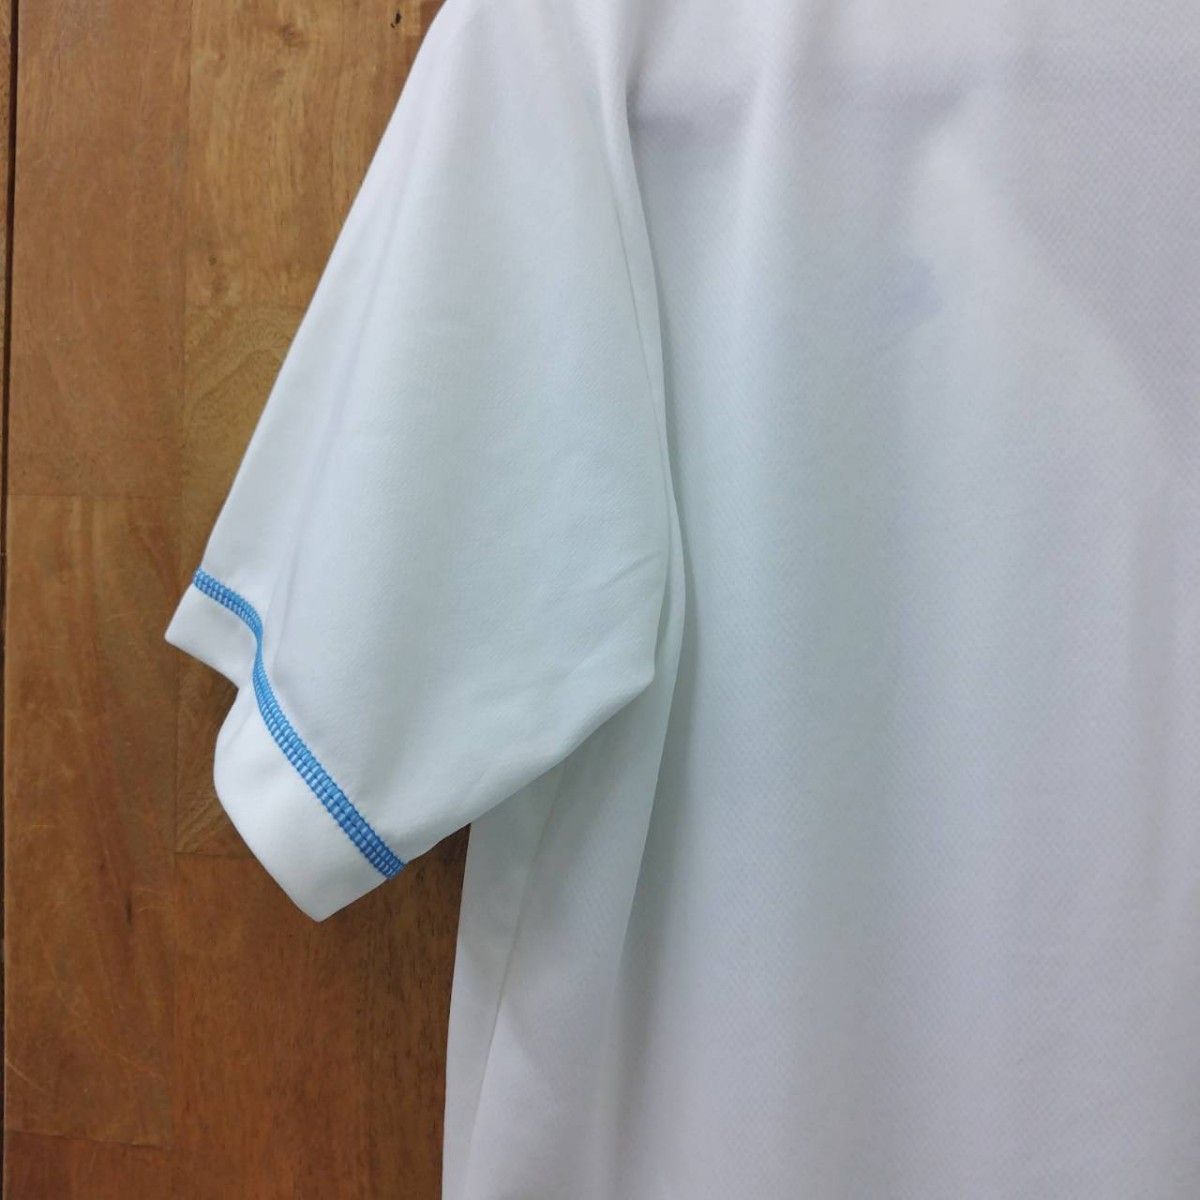 PUMA  ポロシャツ 半袖 Lsize 美品  白 メンズ 夏物